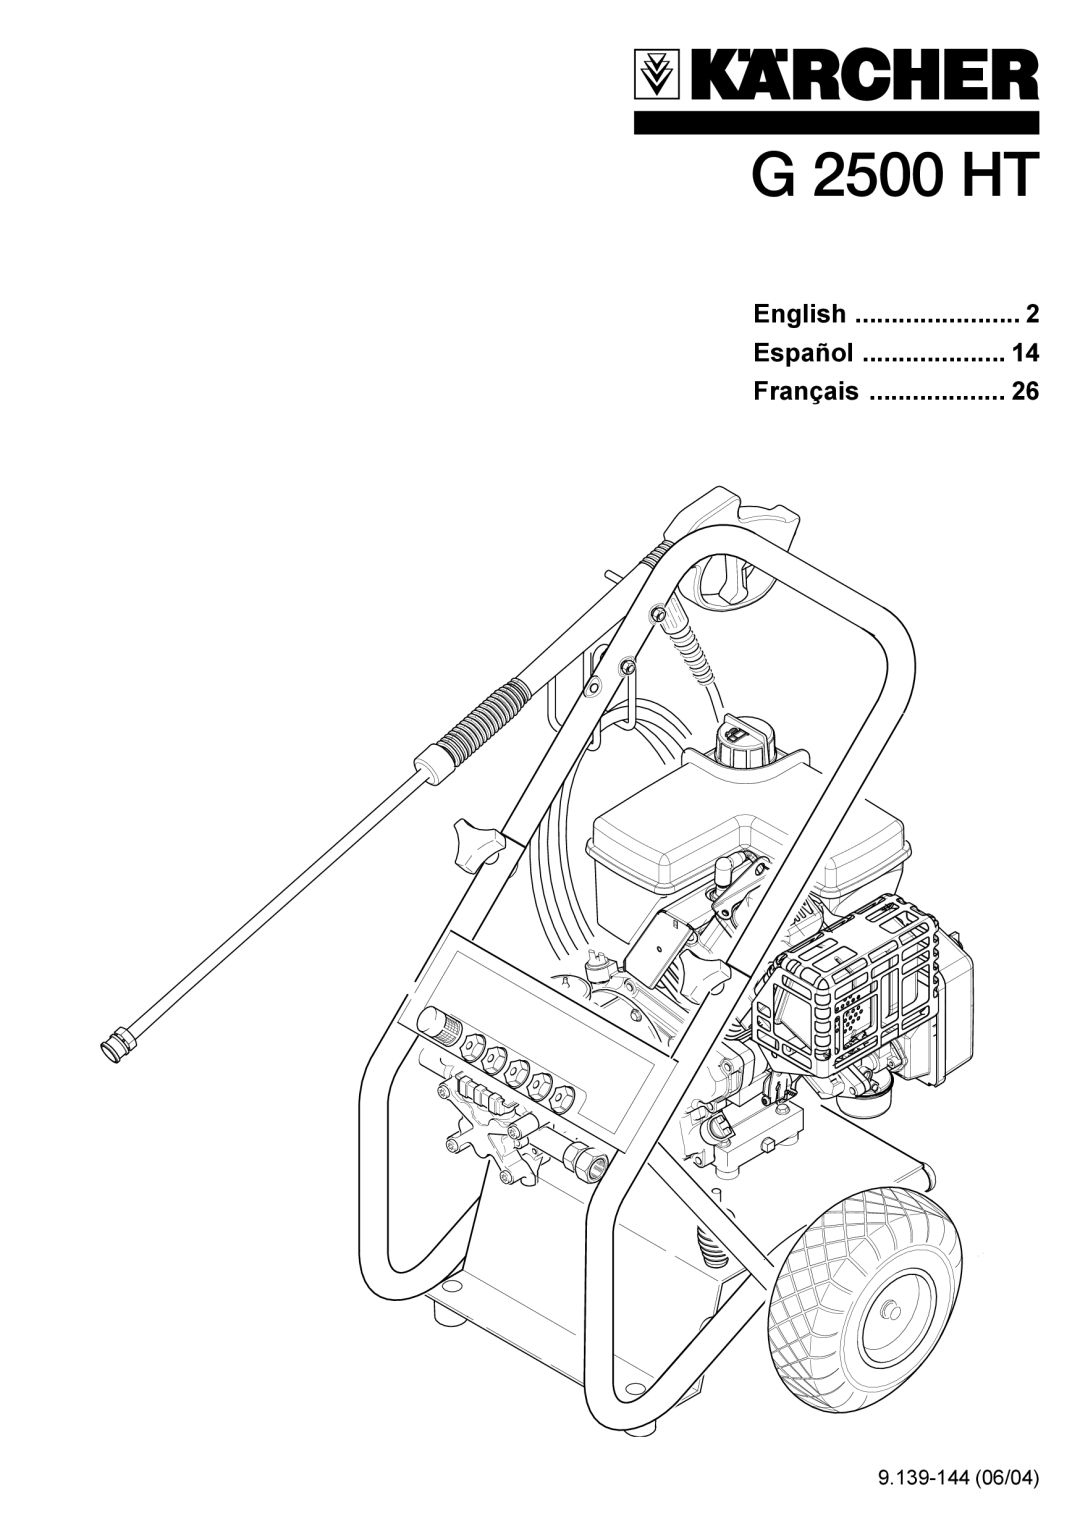 Karcher G 2500 HT manual 